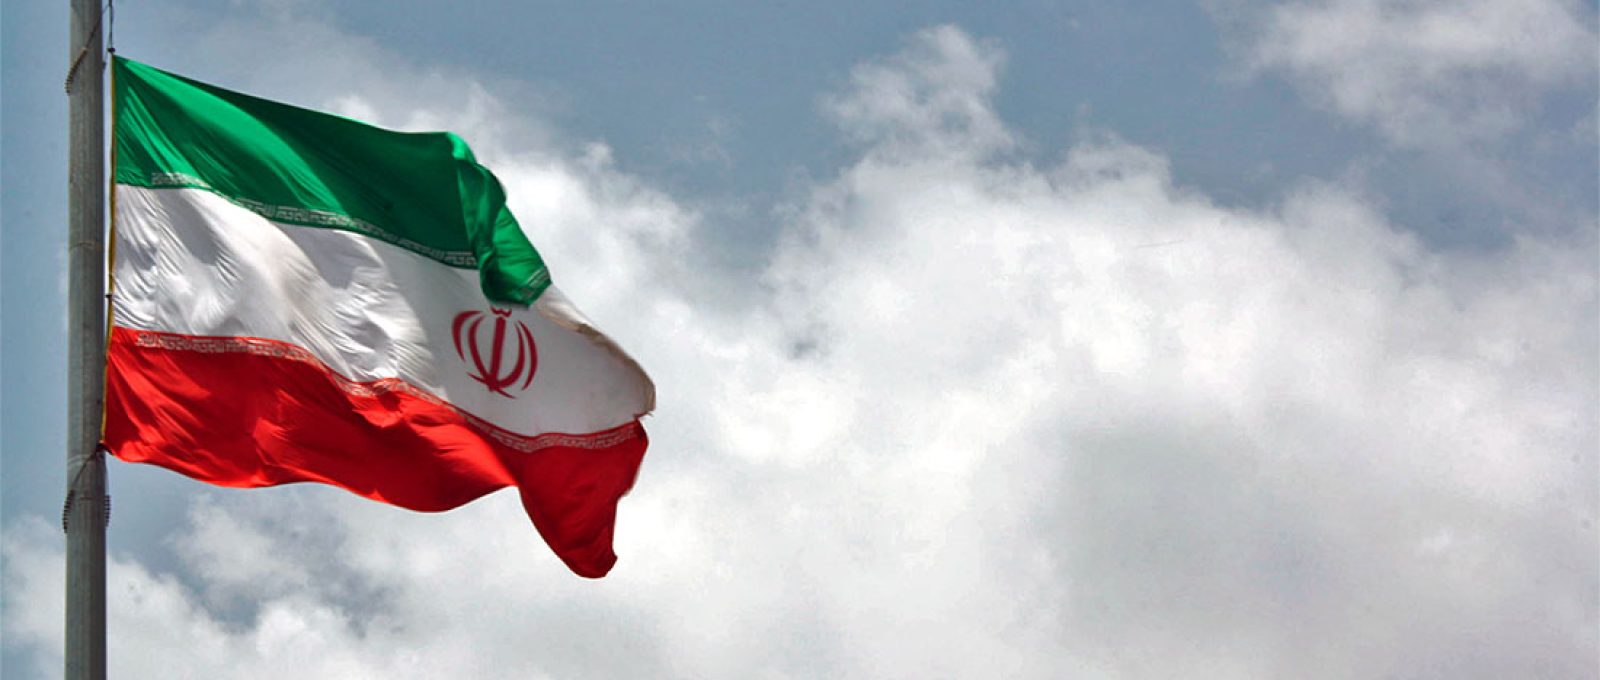 Bandeira do Irã (Blondinrikard Fröberg/Flickr).